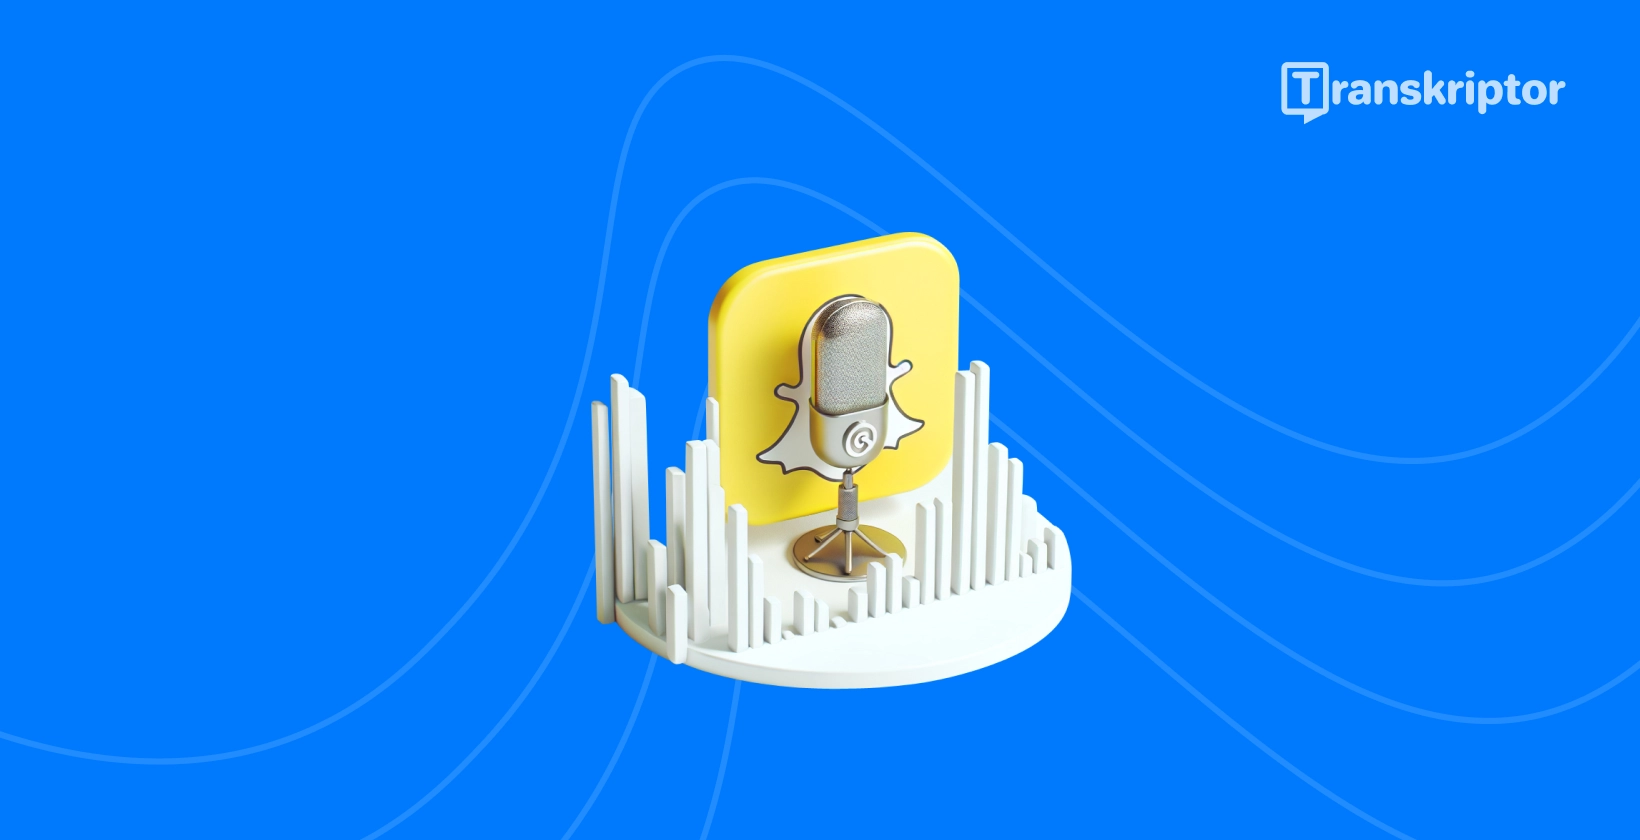 Snapchat икона на призрак и микрофон, символизираща ръководството за транскрипция на аудио от Transkriptor.